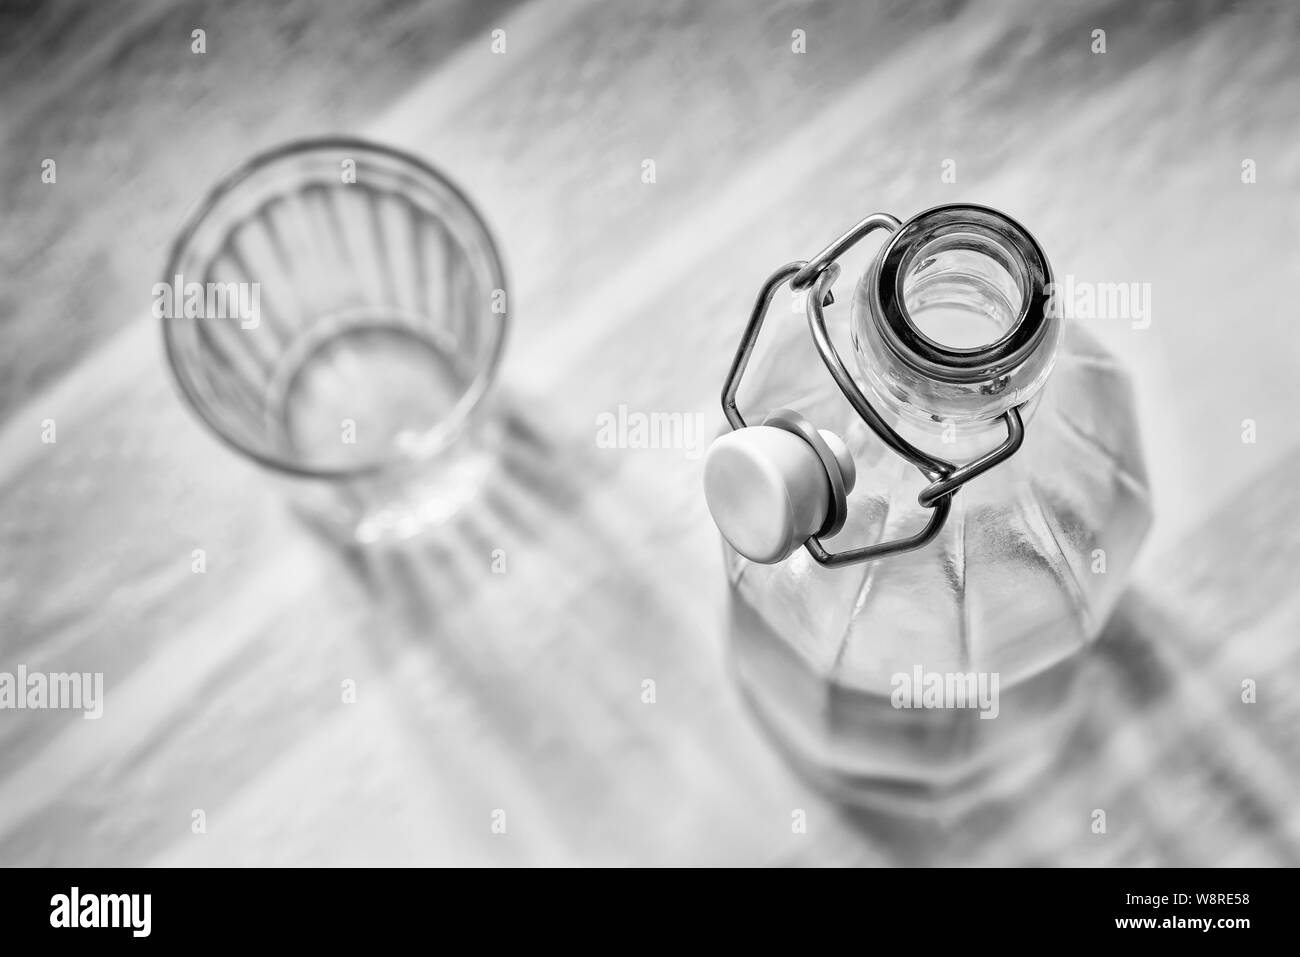 Ansicht von oben in eine Glasflasche mit einem Drahtbügel Verschluss keramischen Stopfen, und ein Getränk Glas, blau, pink und orange abgestreift Tischdecke Stockfoto